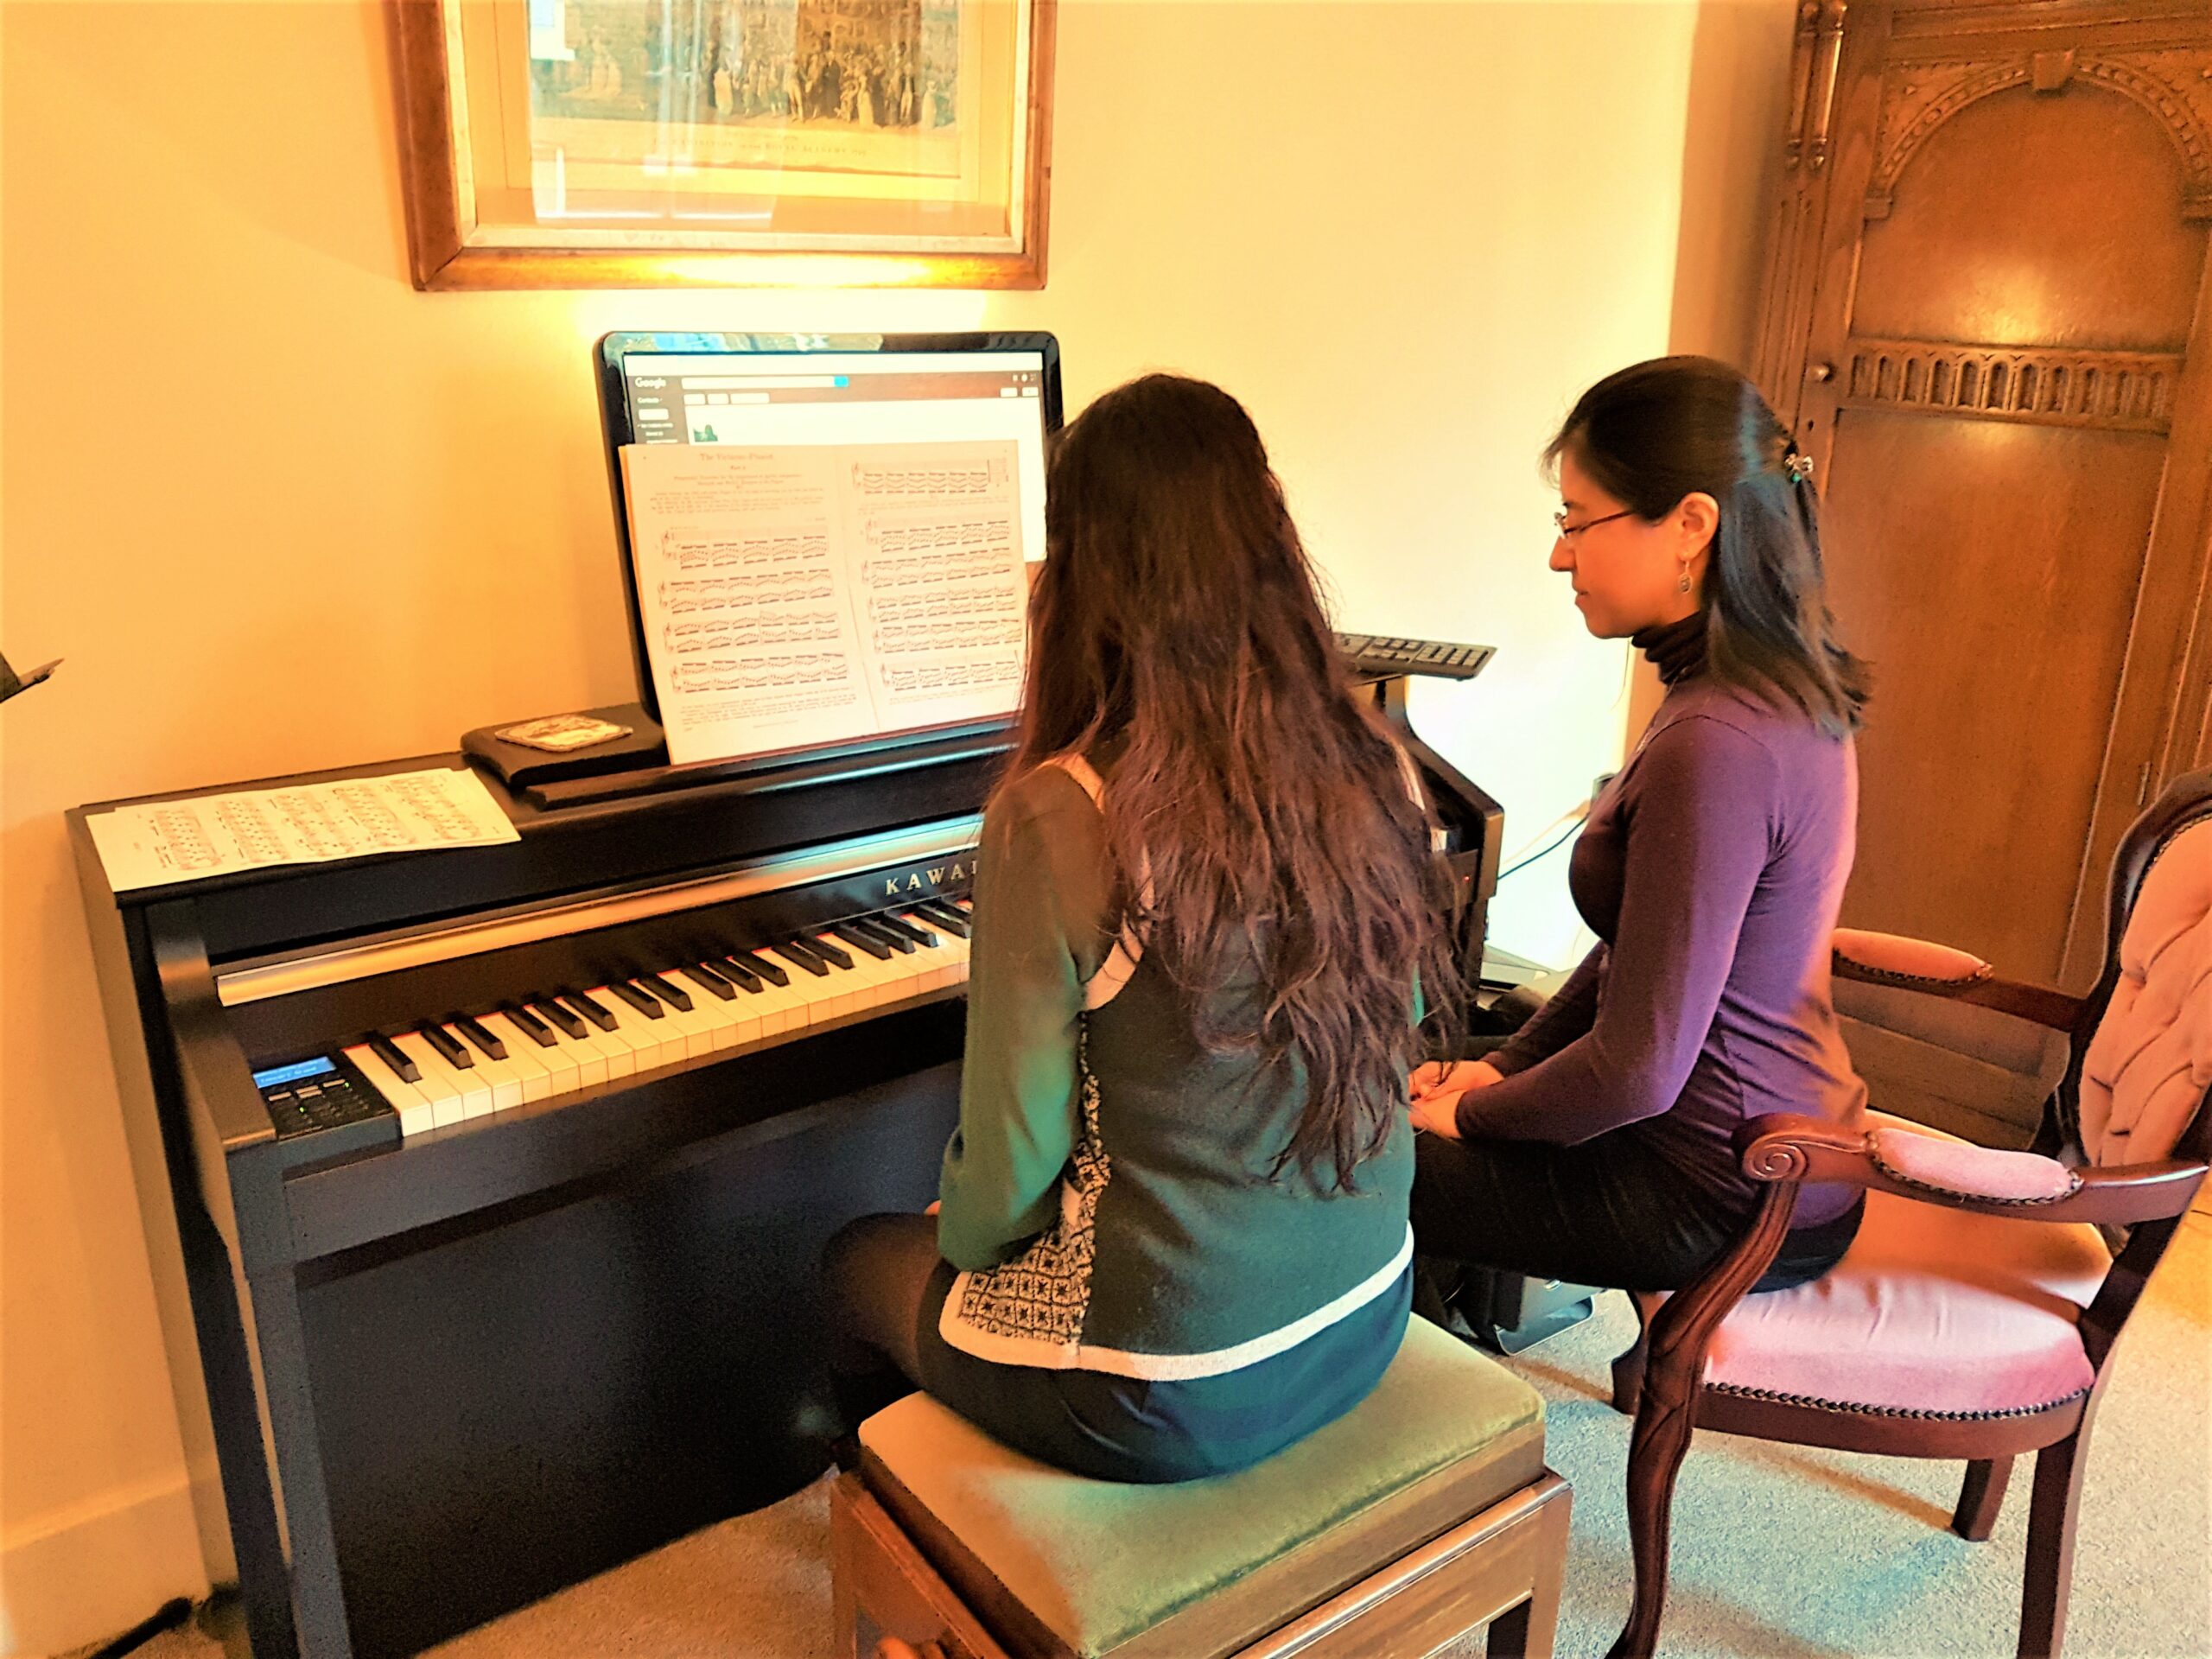 Practising: Keyboard or Piano?